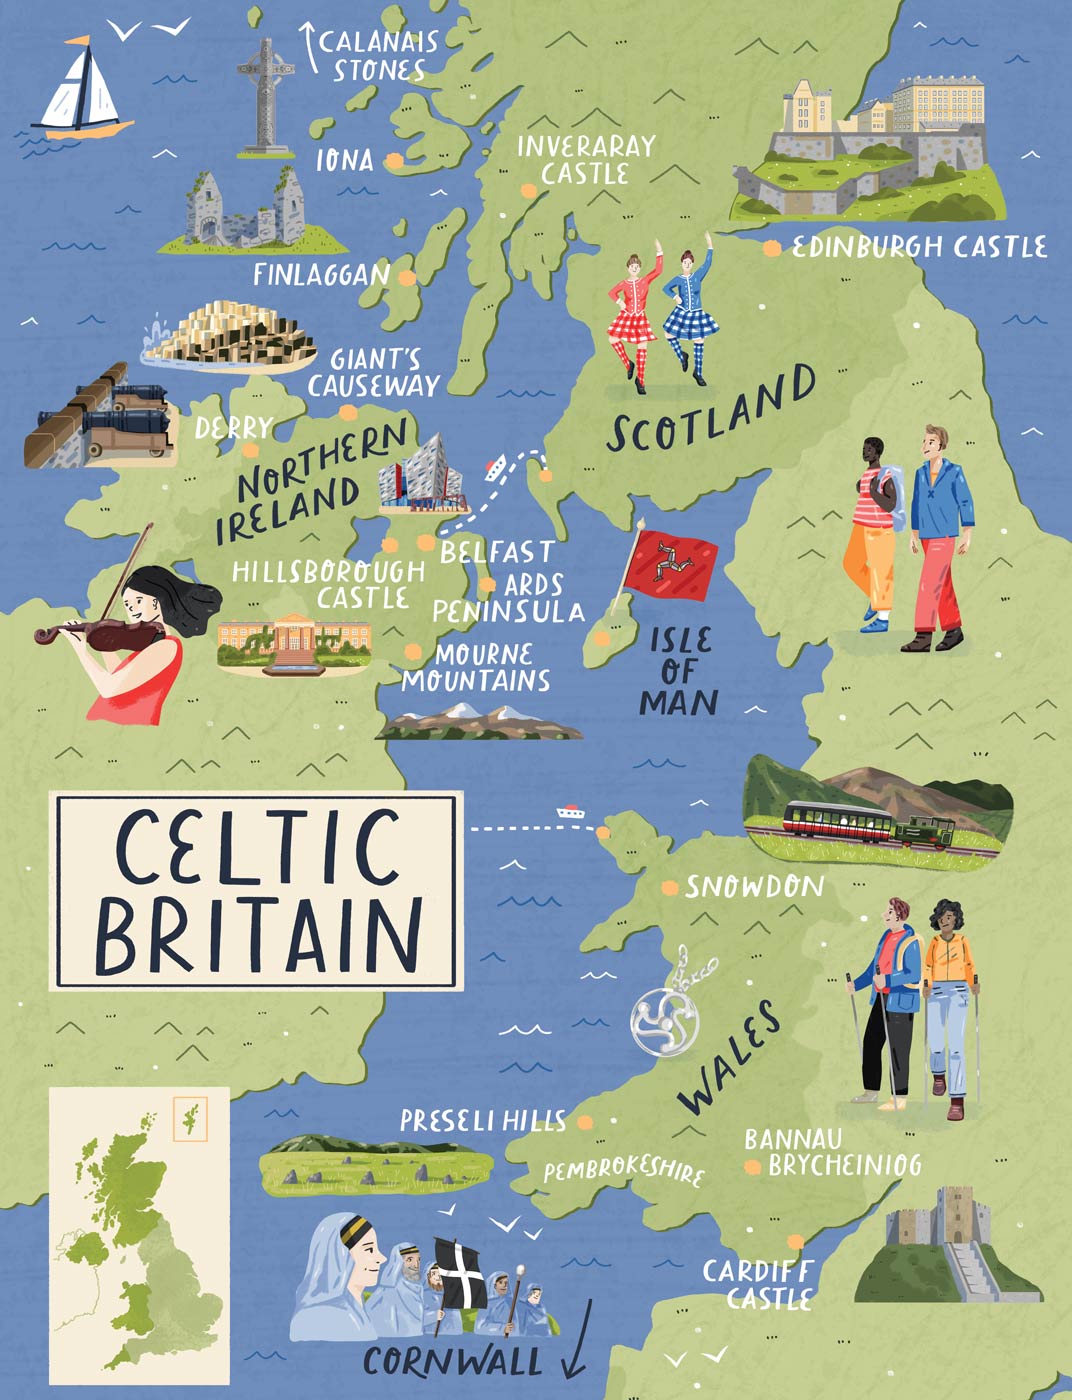 Celtic Britain Map portfolio cover image